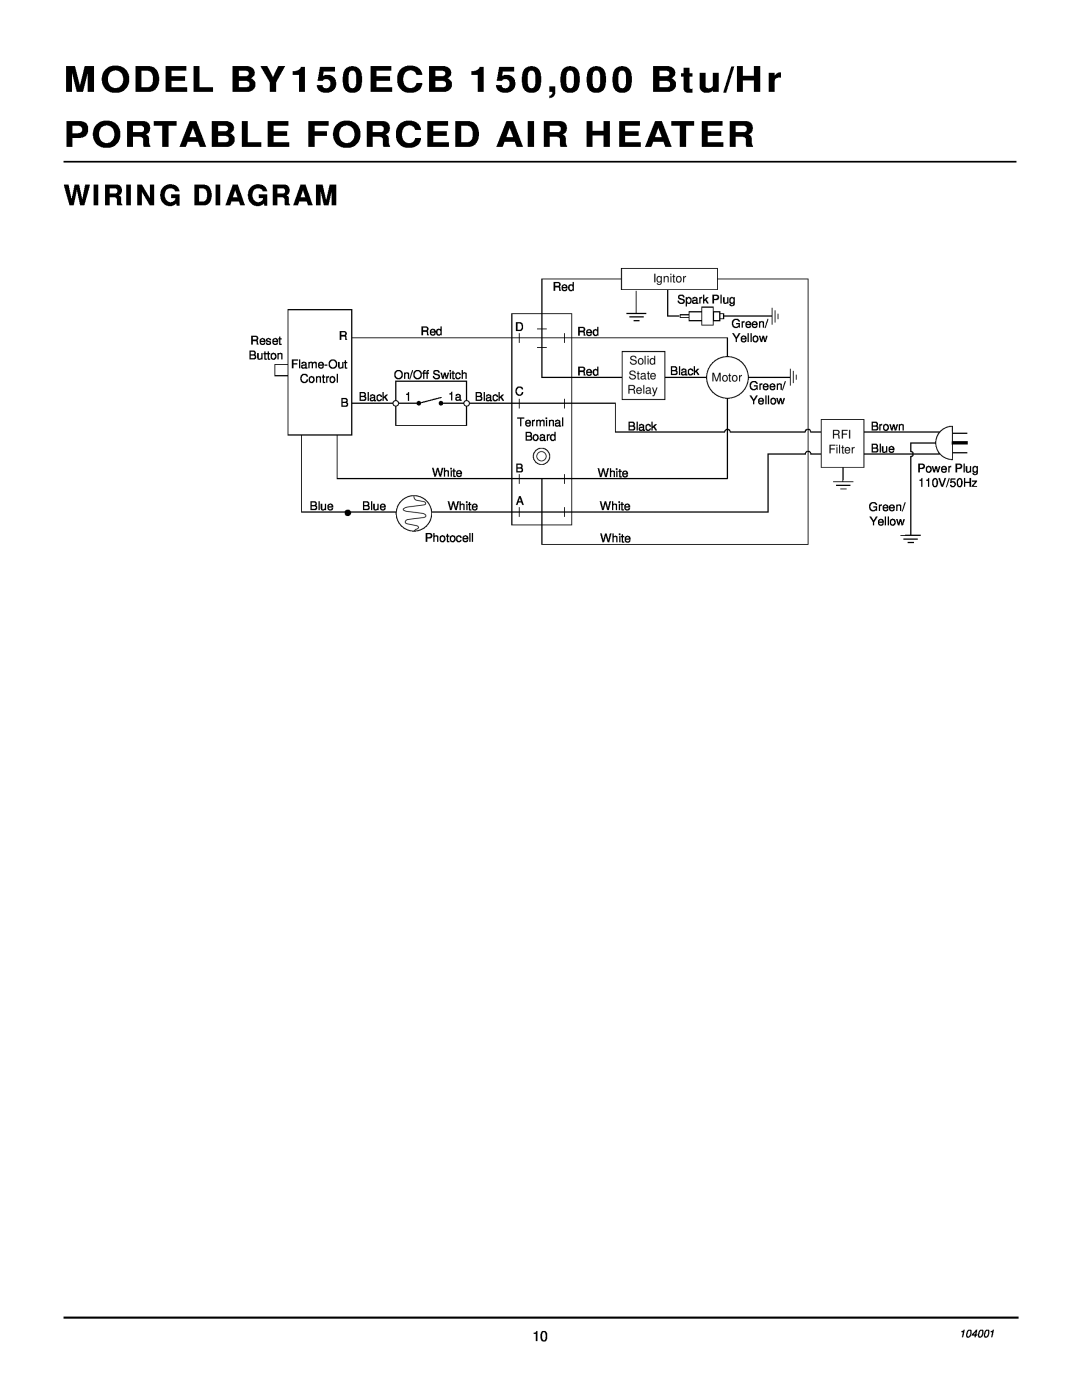 Desa 10BY150ECB owner manual Wiring Diagram, MODEL BY150ECB 150,000 Btu/Hr, Portable Forced Air Heater 